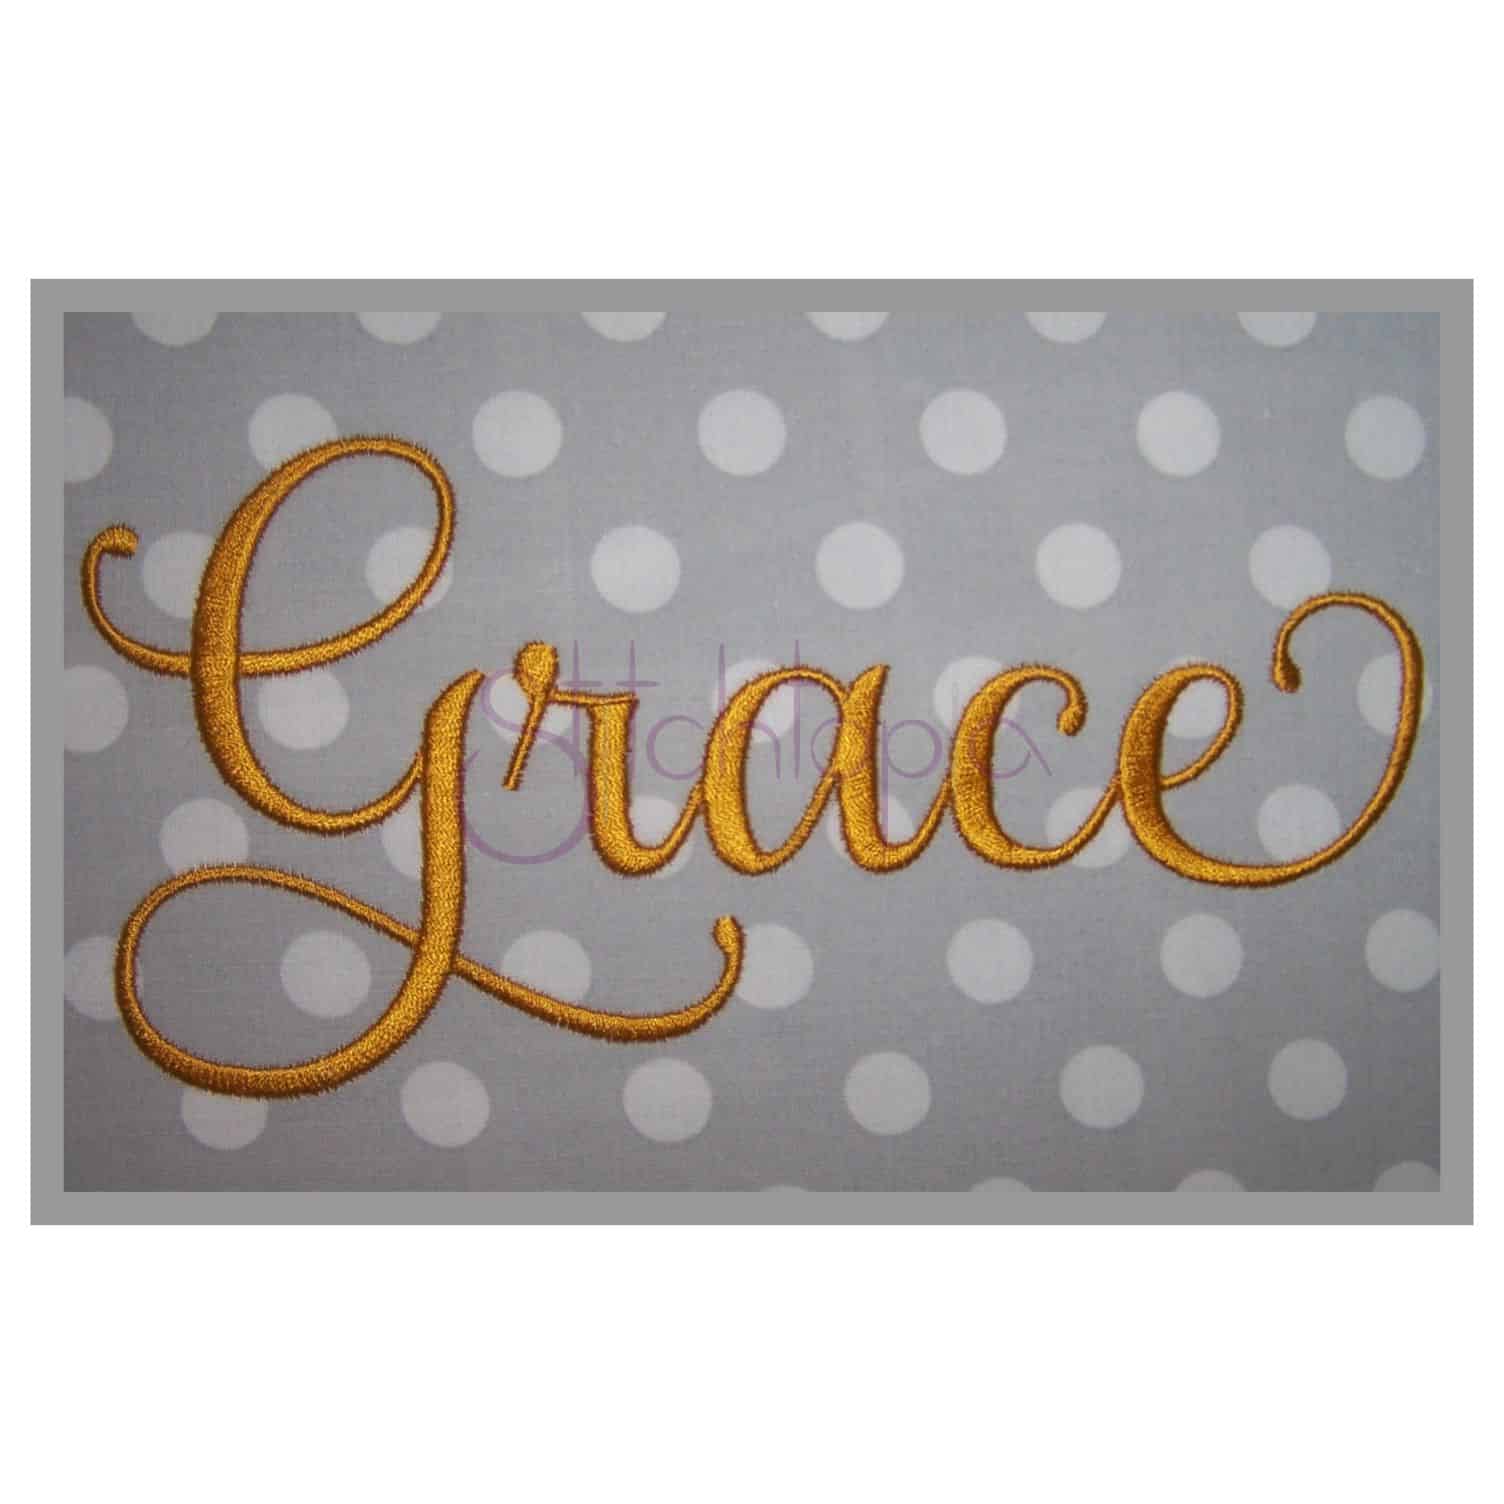 grace script embroidery font